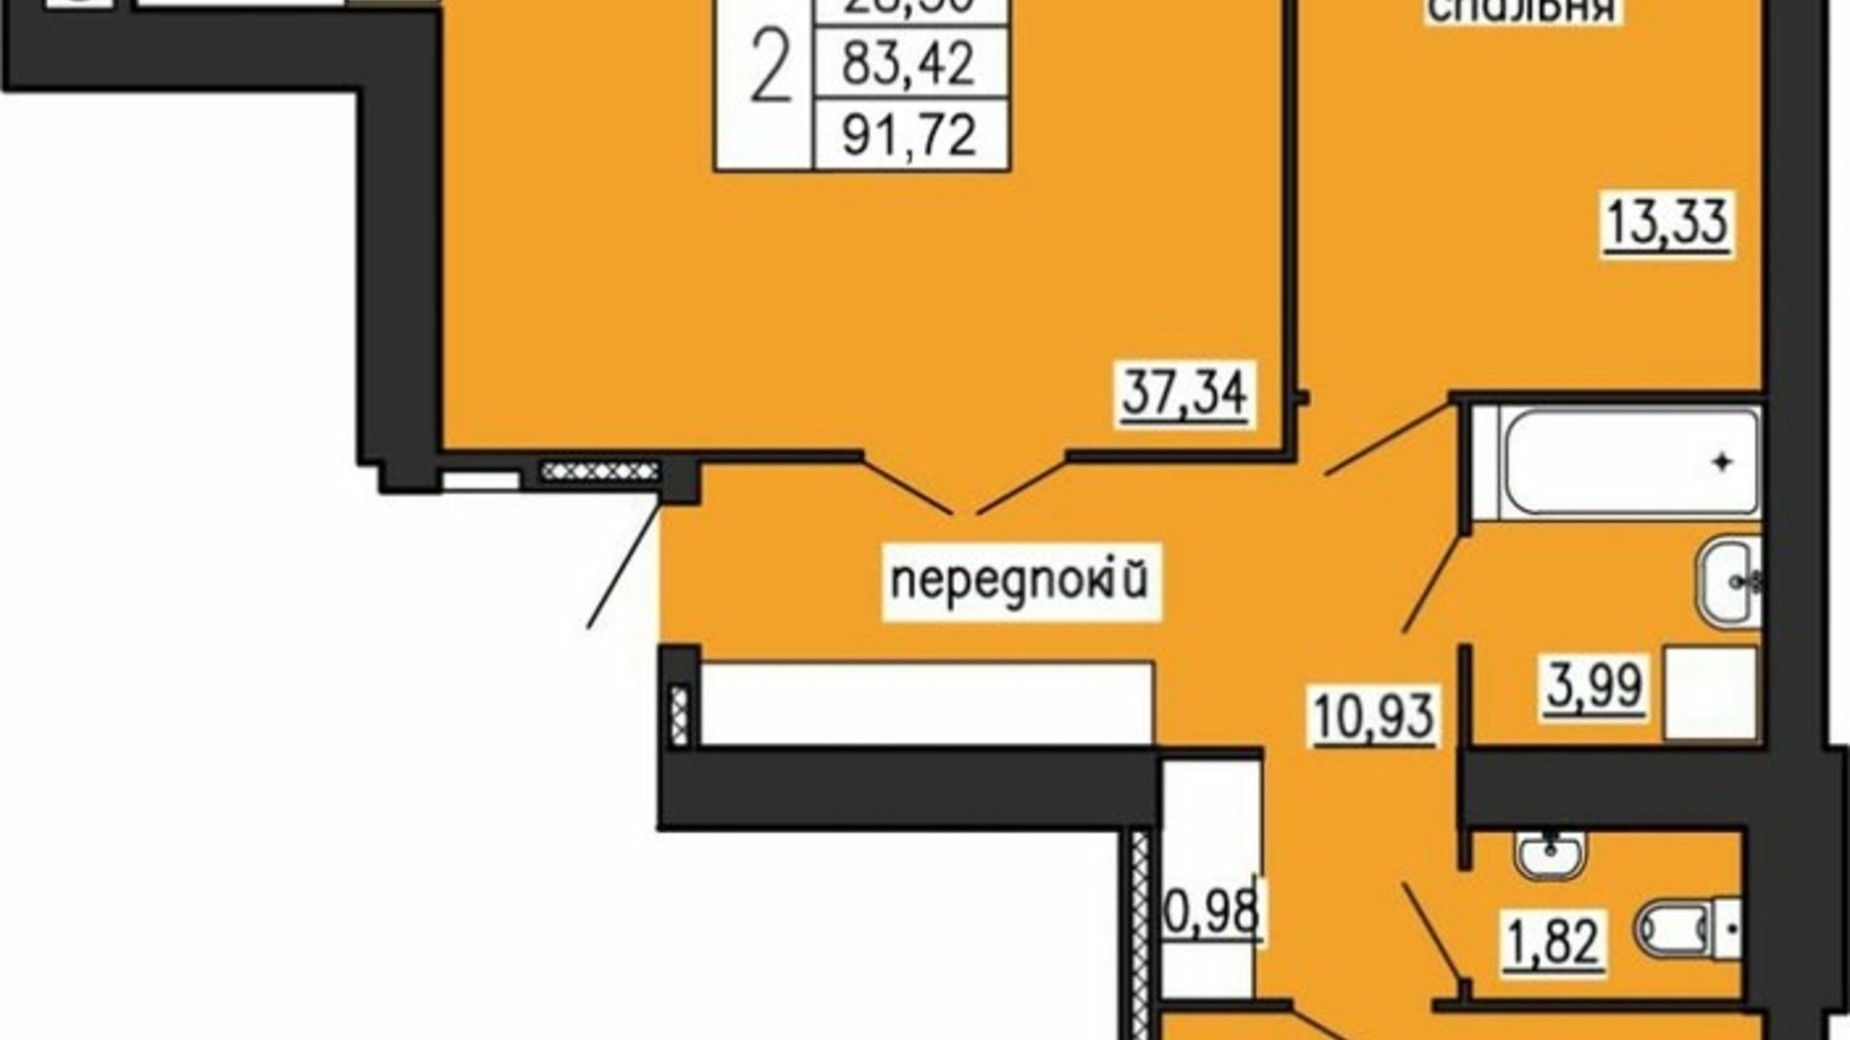 Планировка 2-комнатной квартиры в ЖК по ул. Лучаковского-Троллейбусная 91.72 м², фото 615626